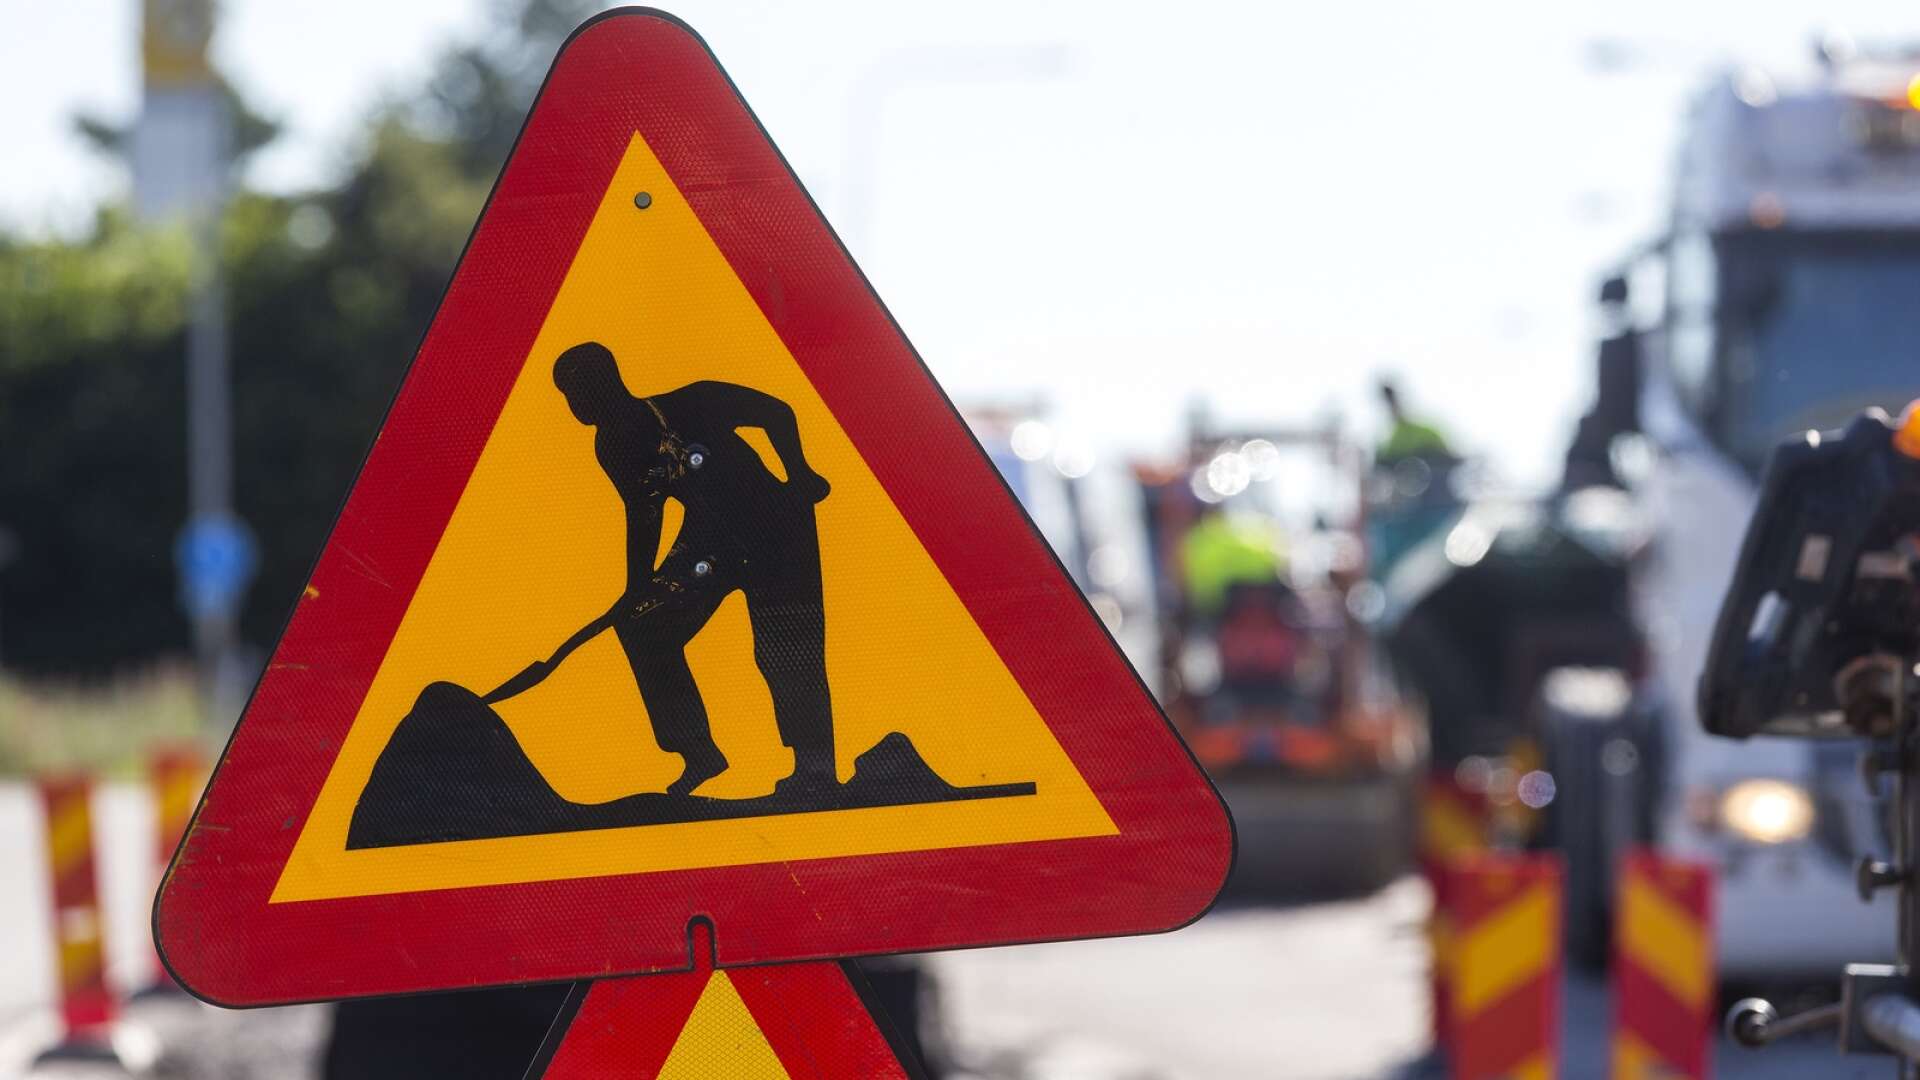 Många som jobbar på vägarbeten känner oro för sin säkerhet på jobbet, skriver Carin Hansdotter.